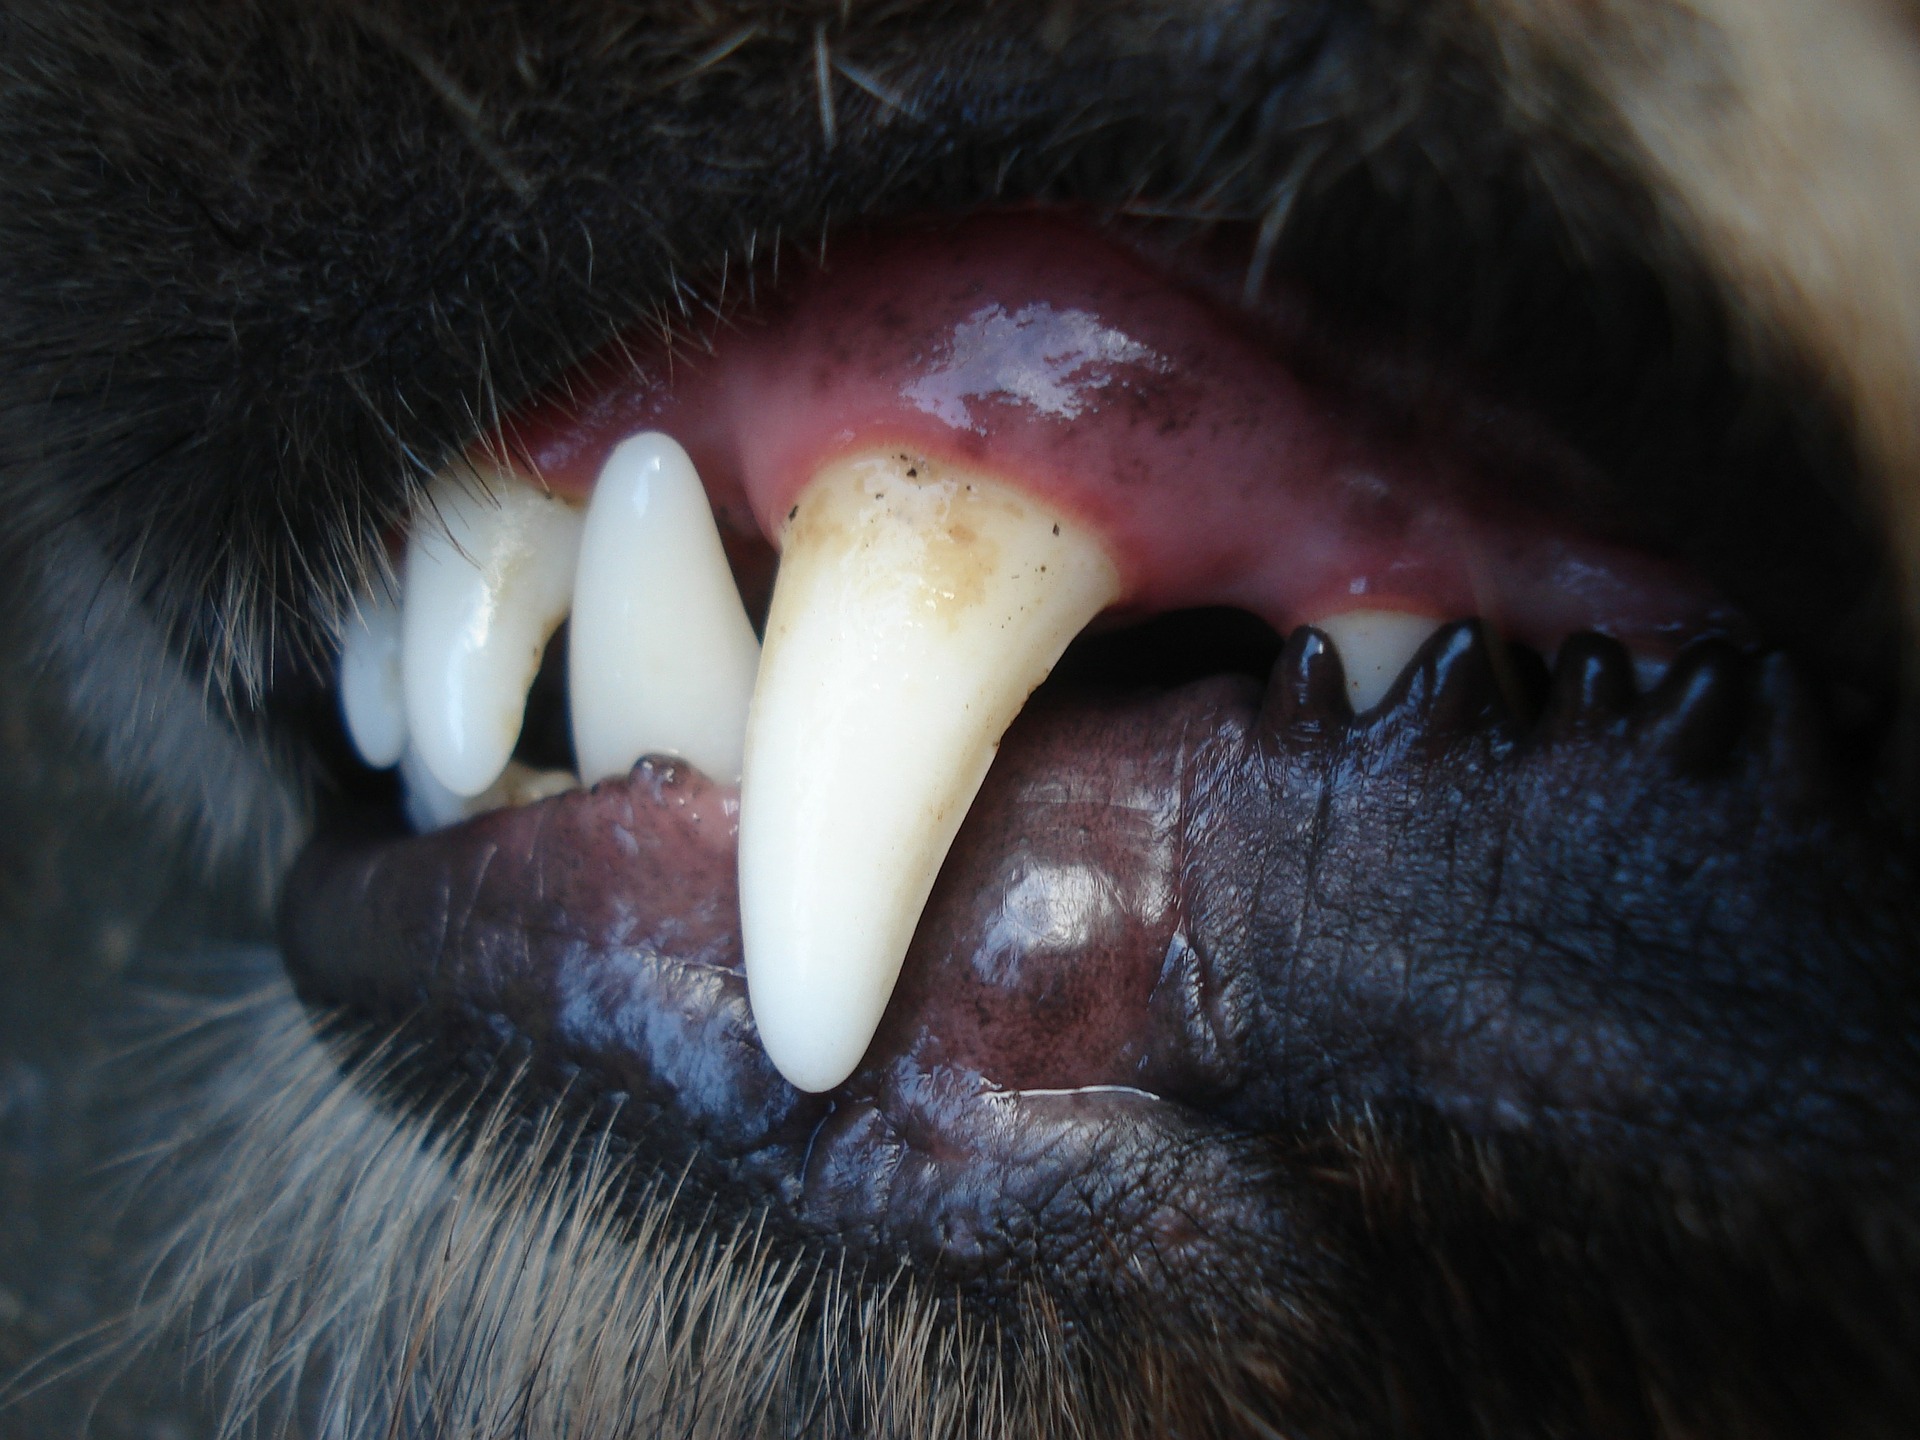 diente de perro